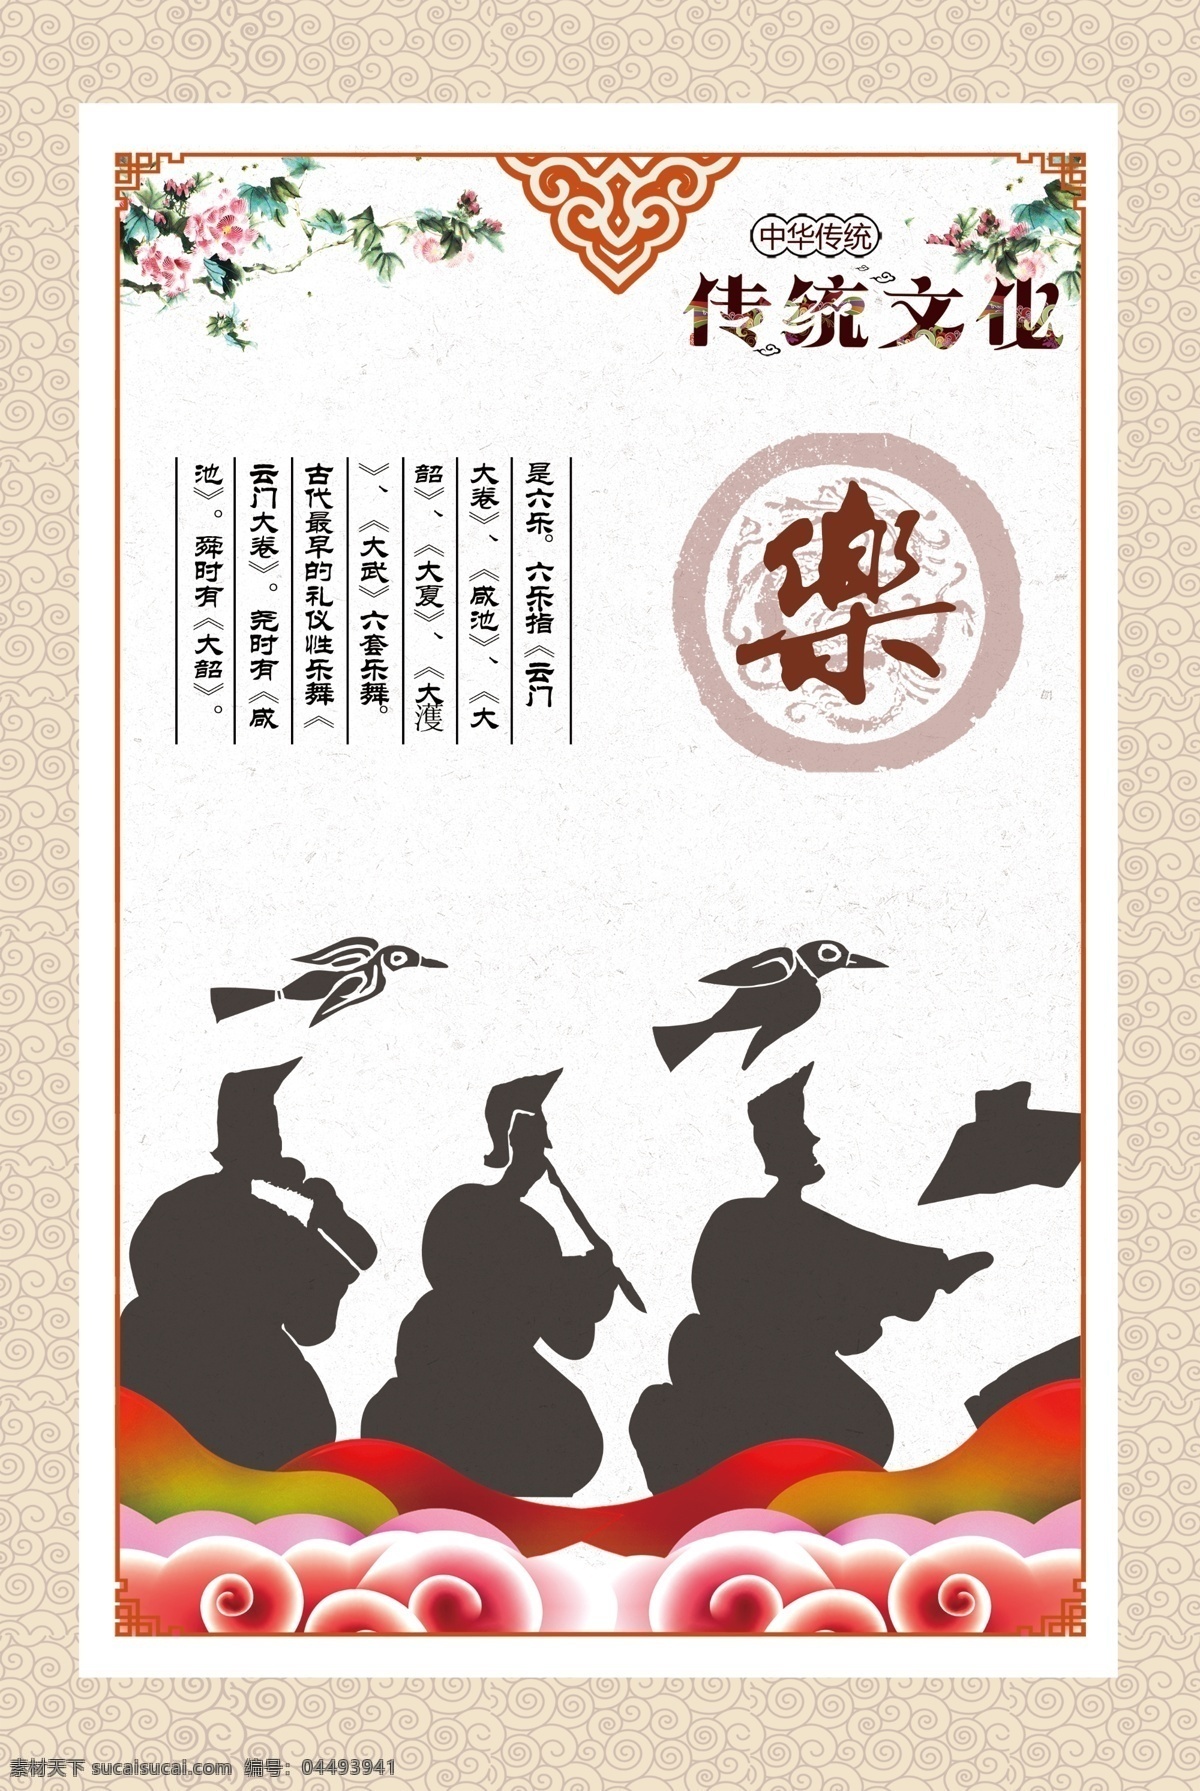 六艺之乐 传统文化 六艺 乐 图像 解释 分层 祥云 古典 飞鸟 图形 演奏 牡丹 展板 龙纹